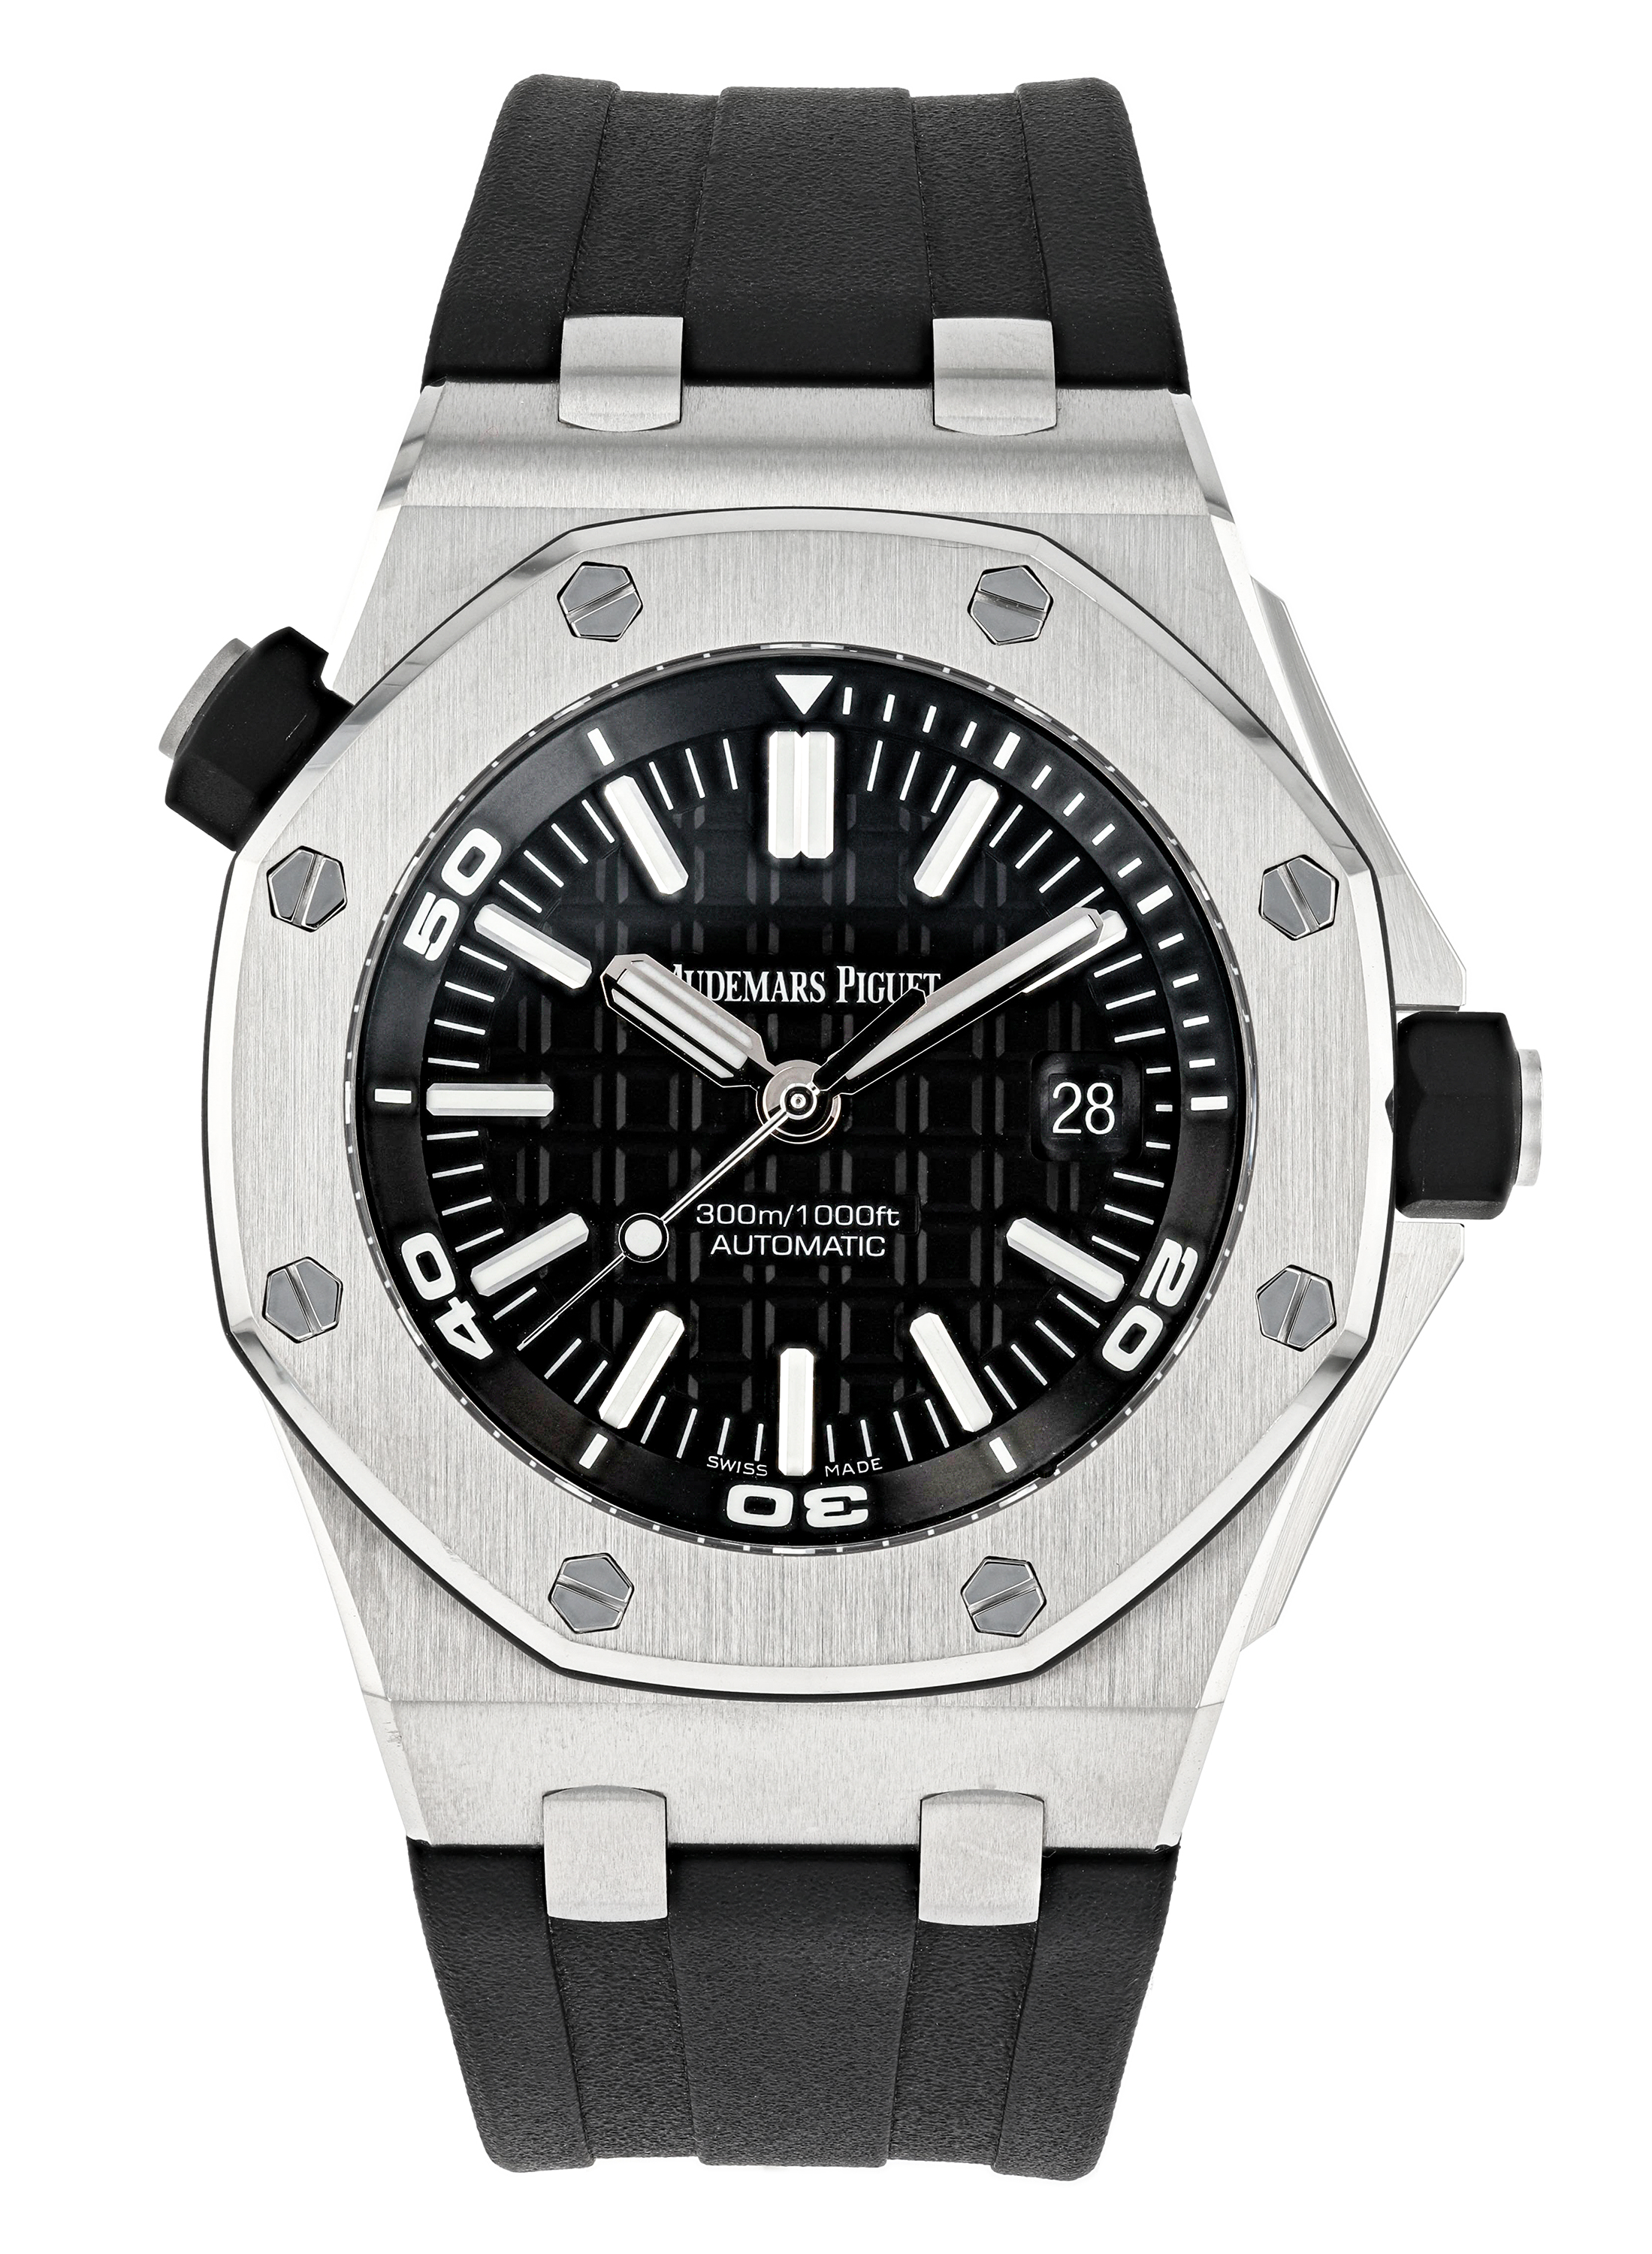 Buy Audemars Piguet Offshore Diver 15710 steel watch